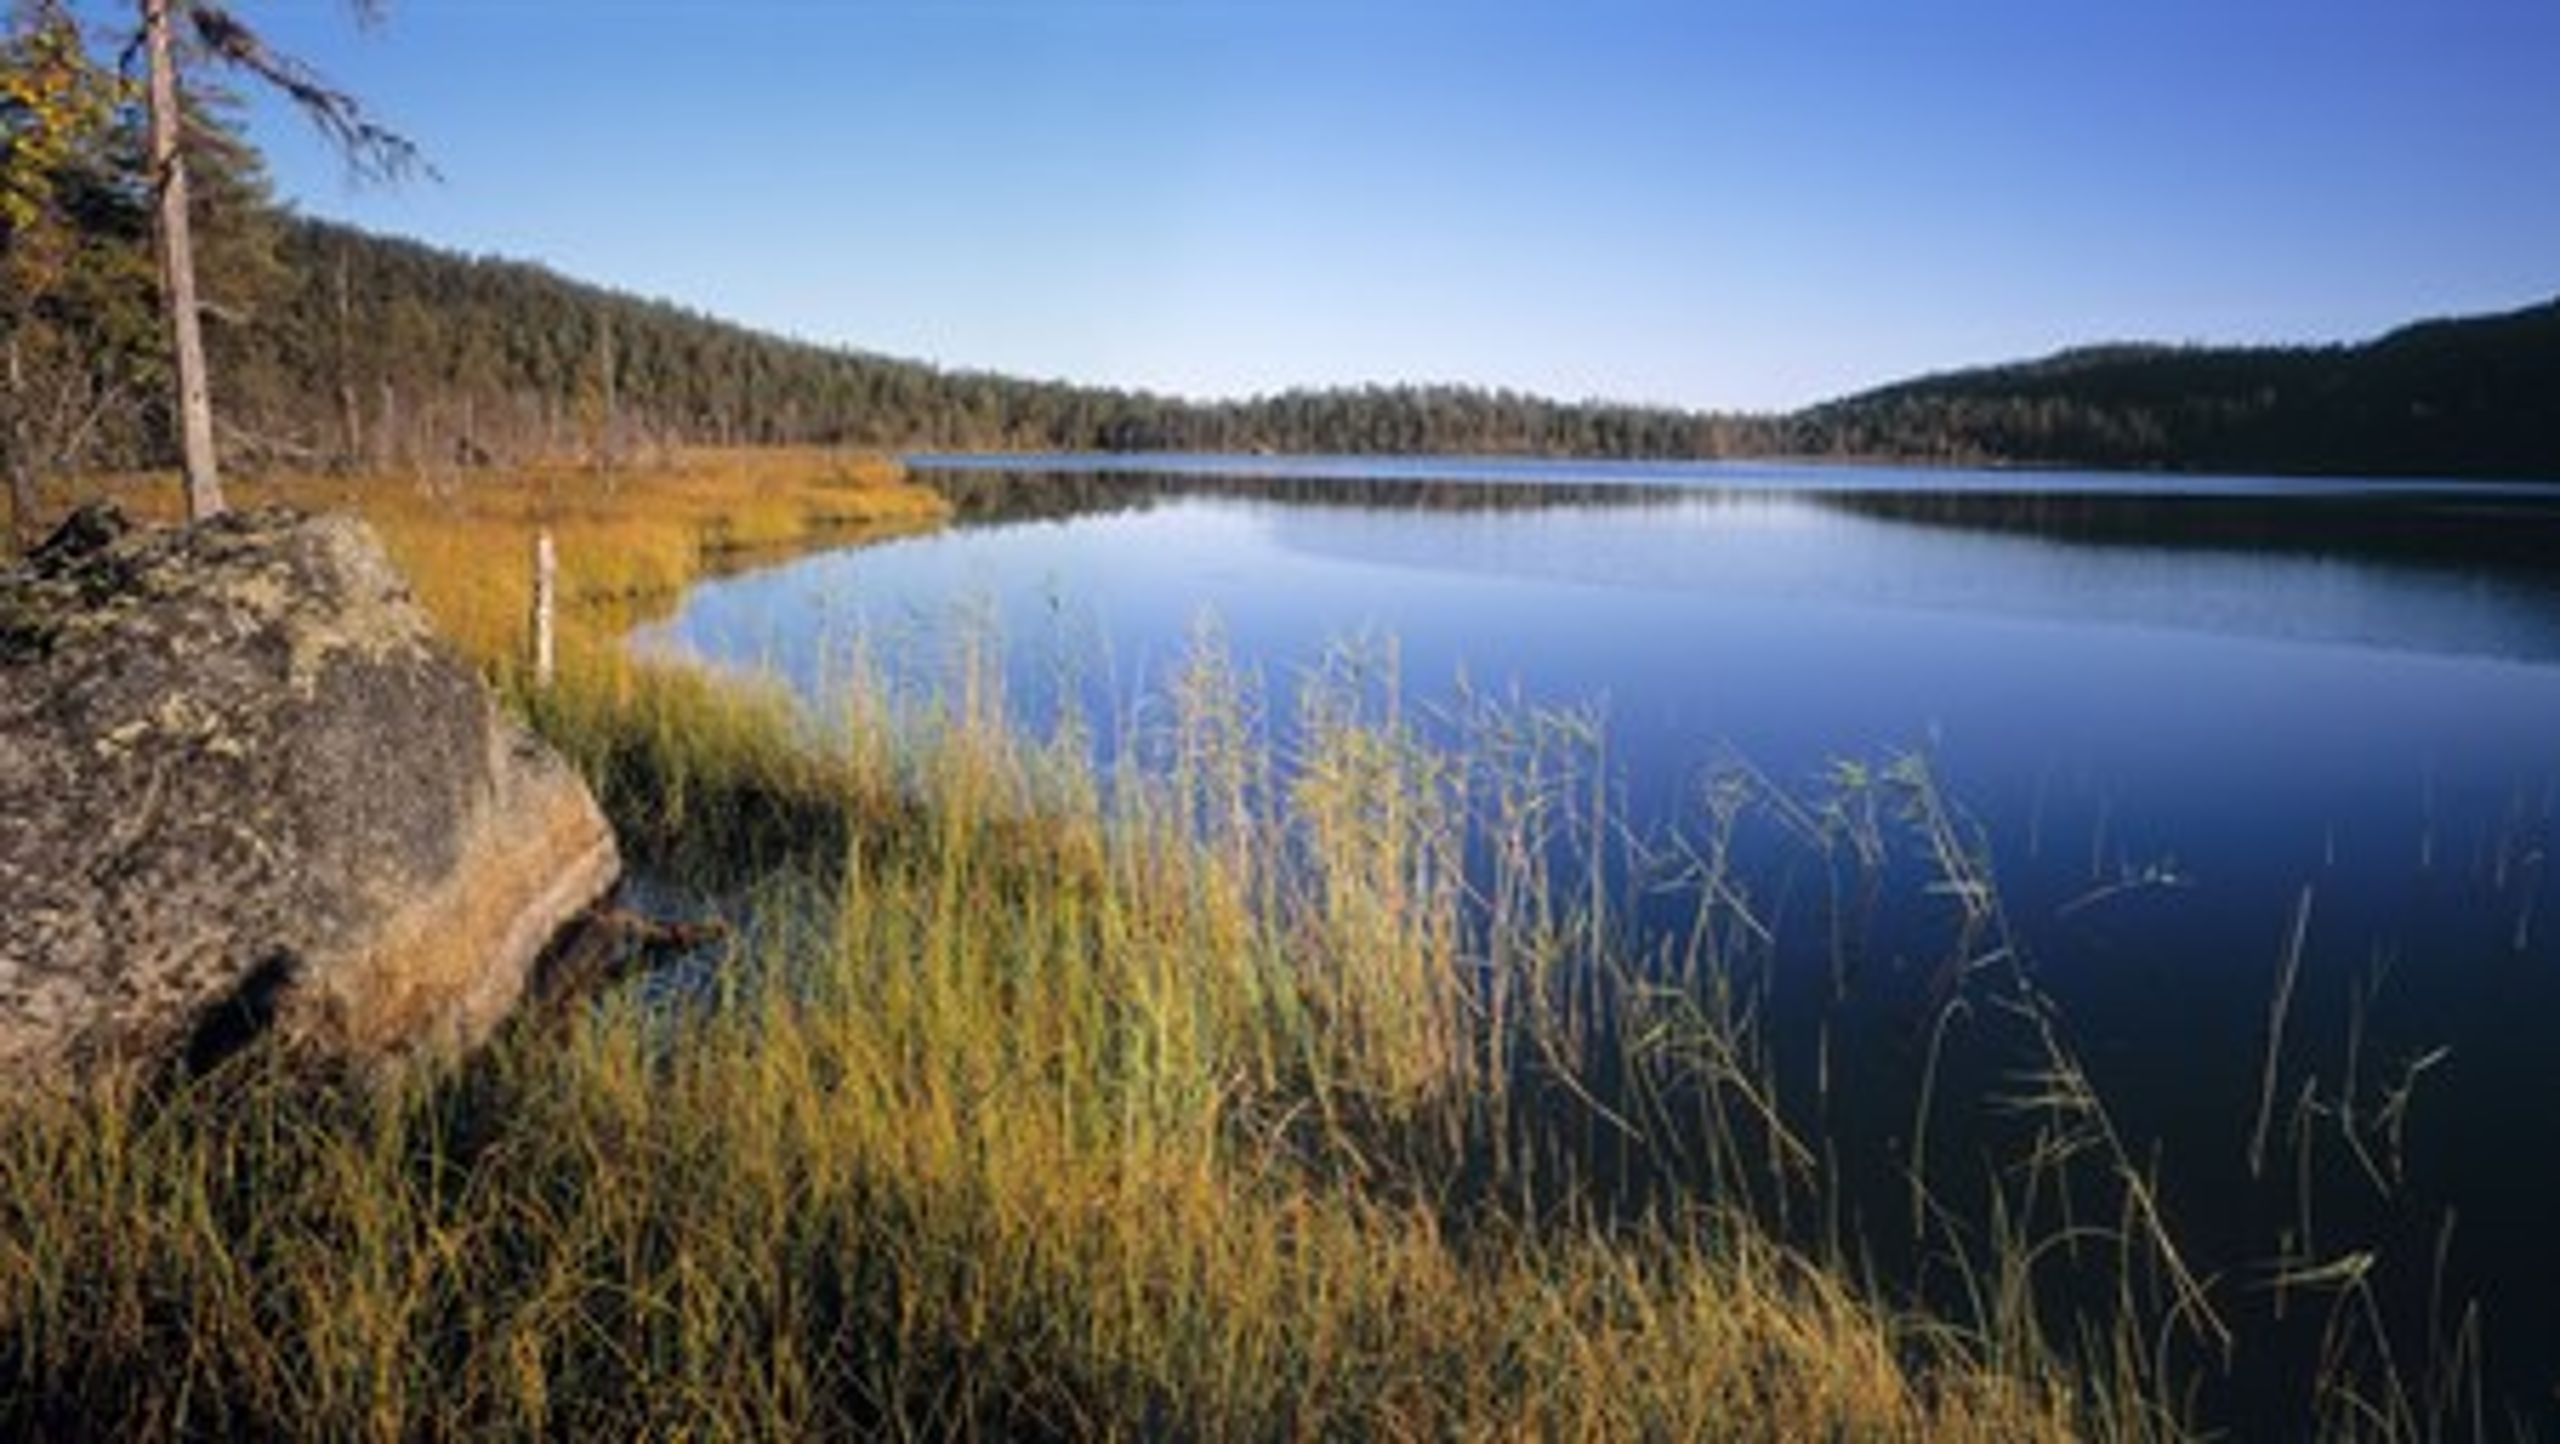 Nationalparken Björnlandet betecknas som en storslagen vildmark och en av landets värdefullaste urskogar. Nu ska den bli dubbelt så stor, anser Naturvårdsverket.